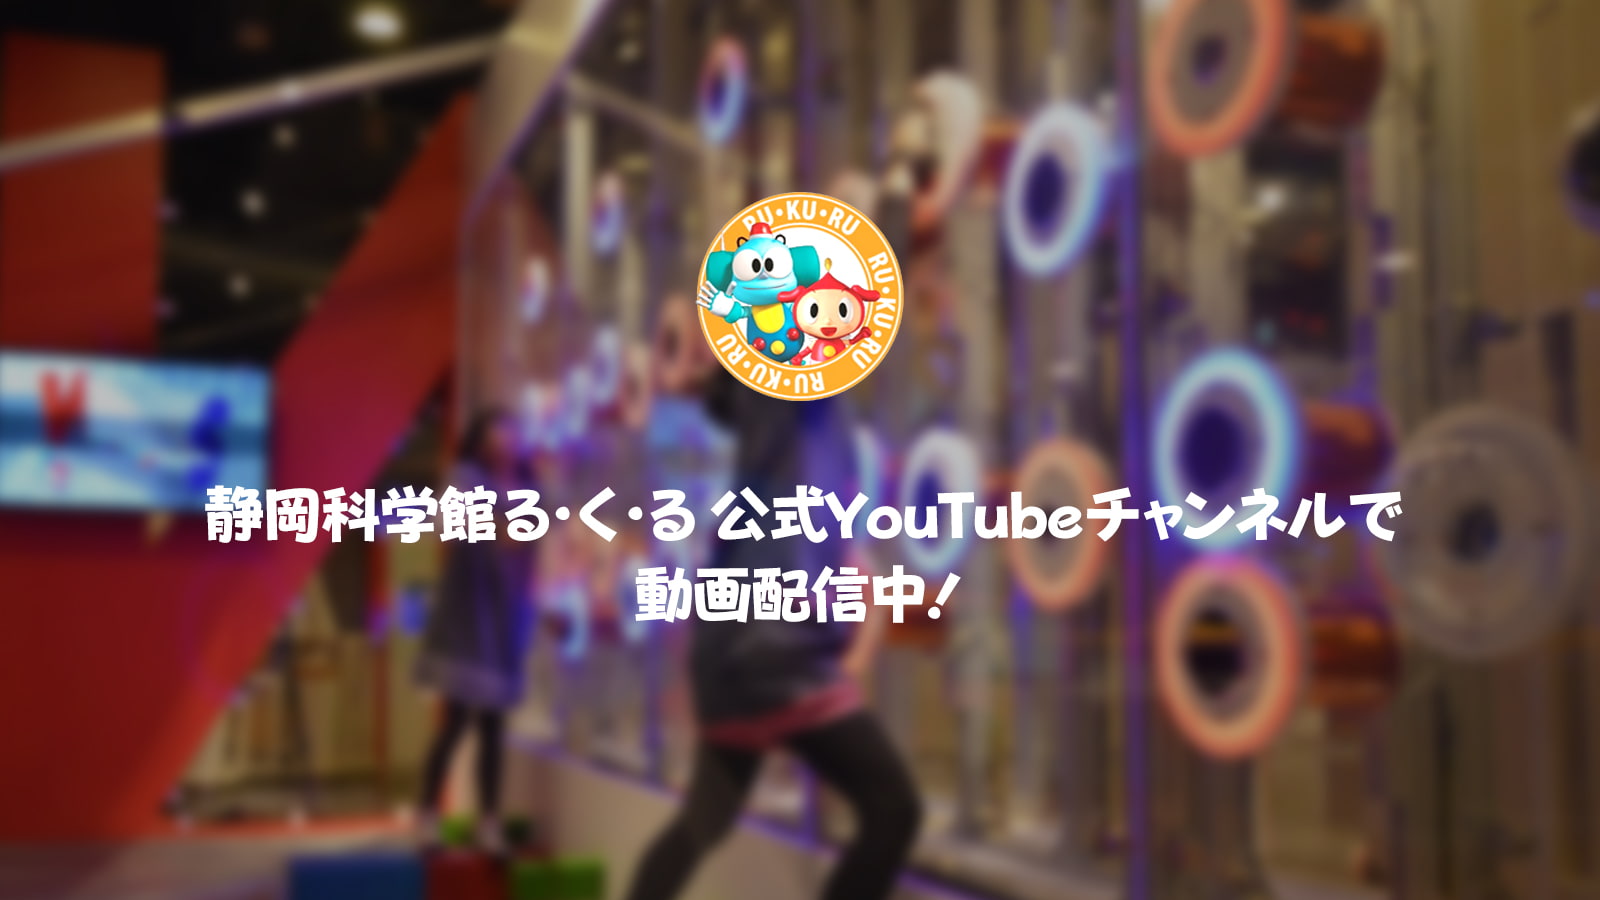 静岡科学館る・く・る公式YouTubeチャンネル